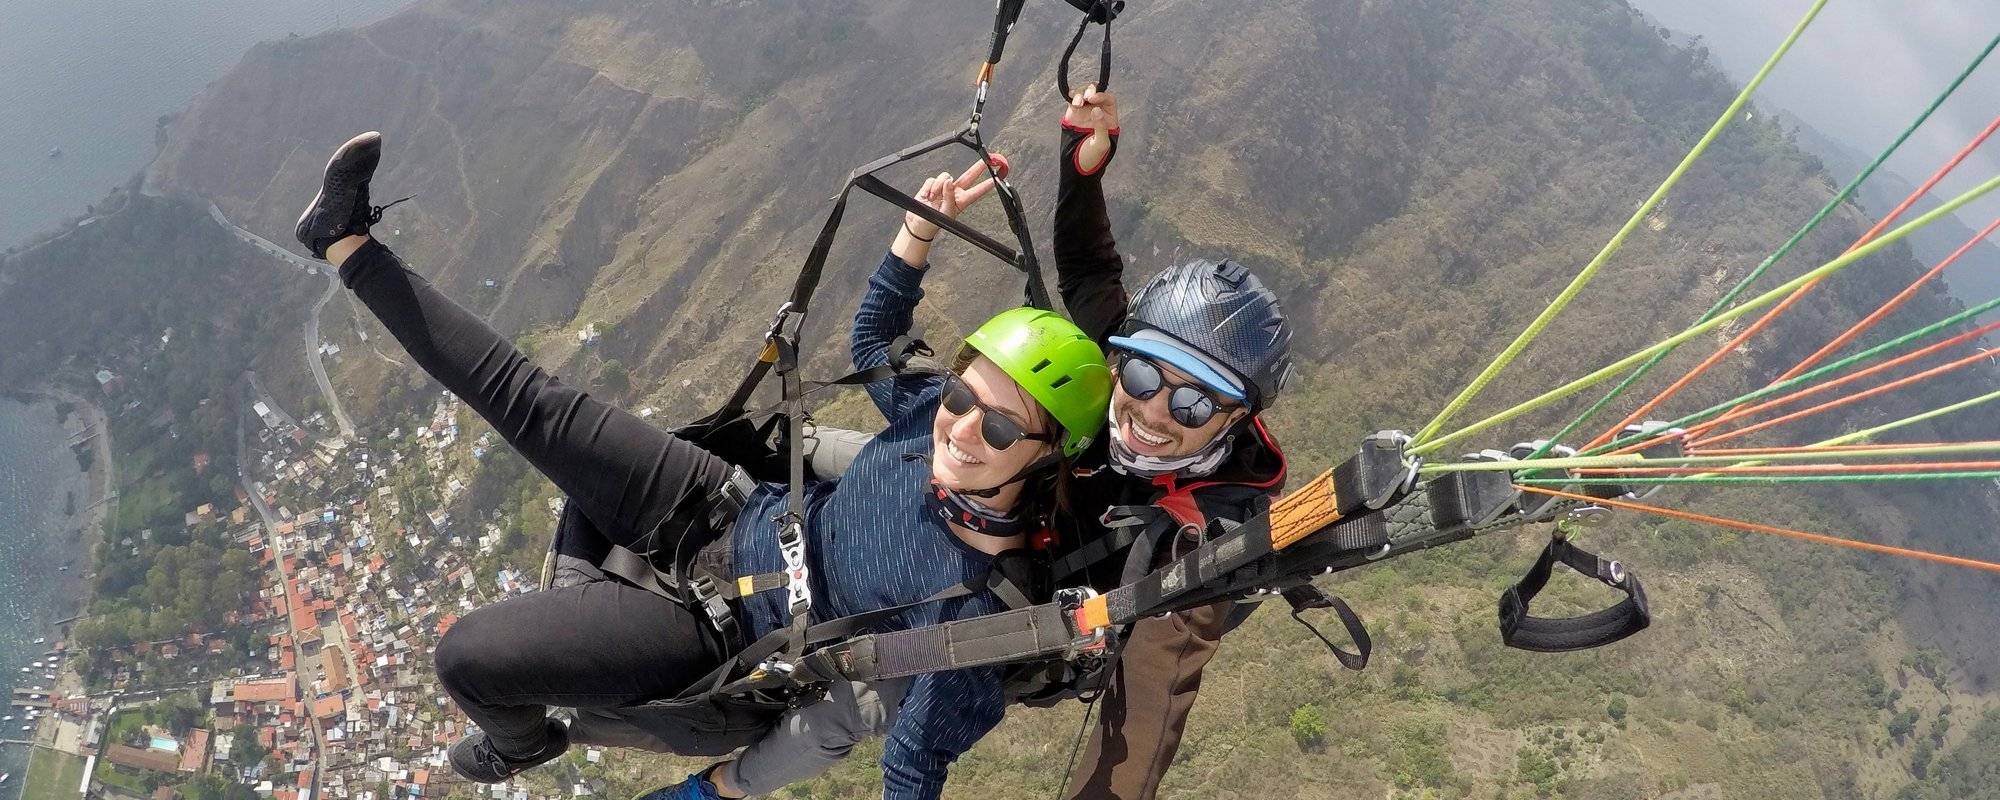 Guatemala Part 4: Paragliding at Lake Atitlán (Photos + Videos)